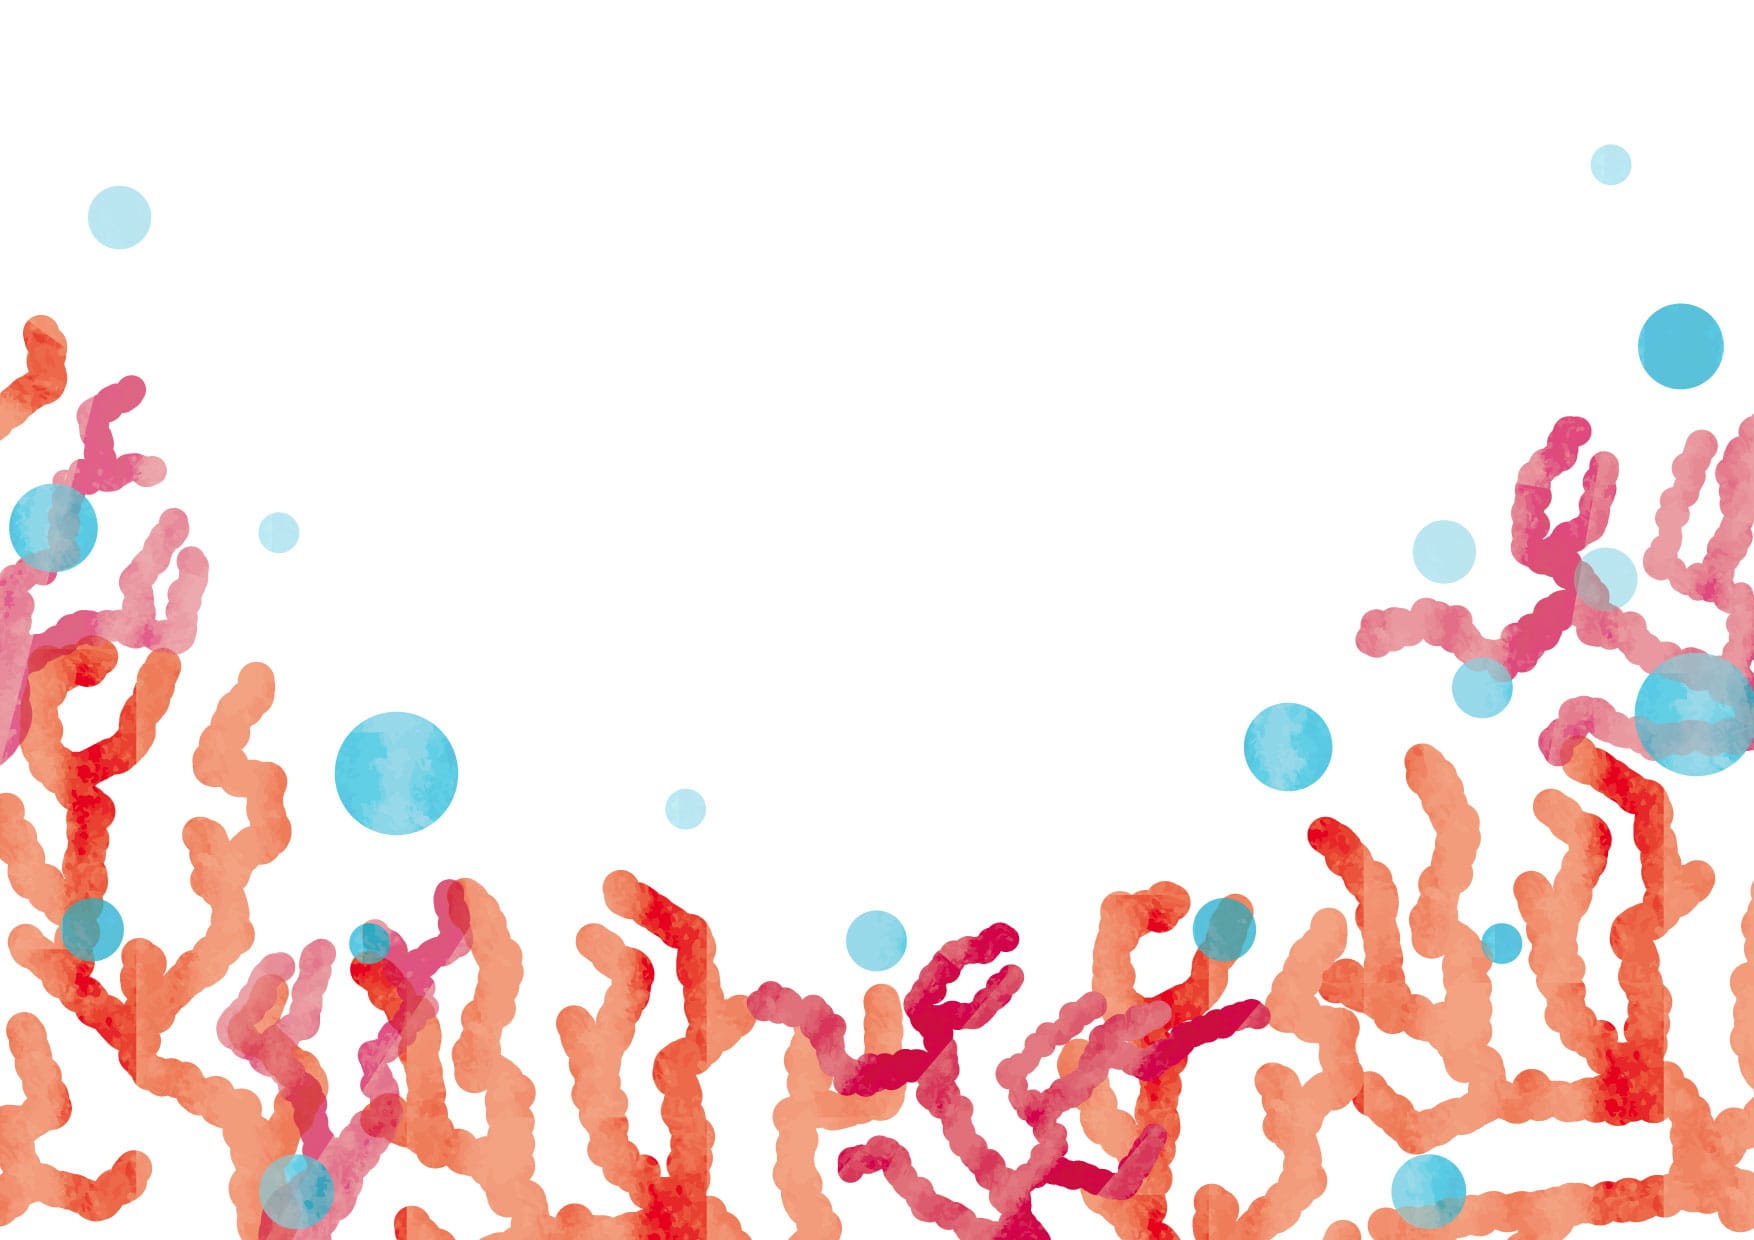 可愛いイラスト無料 珊瑚 さんご 背景 Free Illustration Coral Background 公式 イラスト素材サイト イラスト ダウンロード